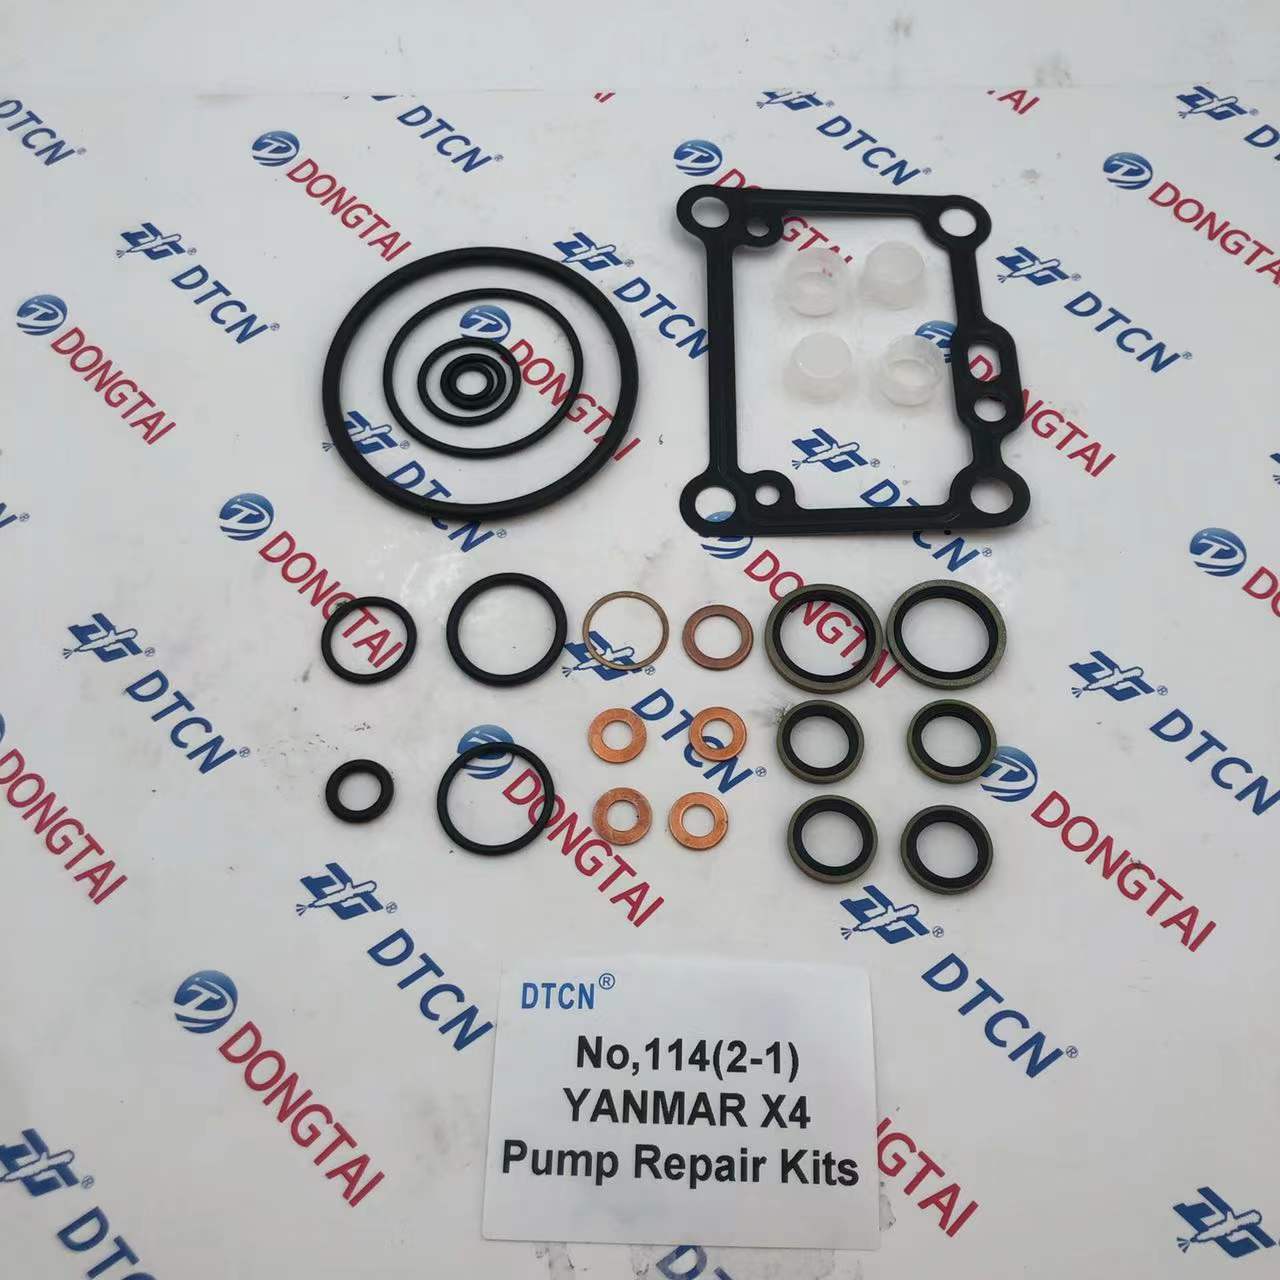 NO.114(2-1) YANMAR X4 Pump Repair kits